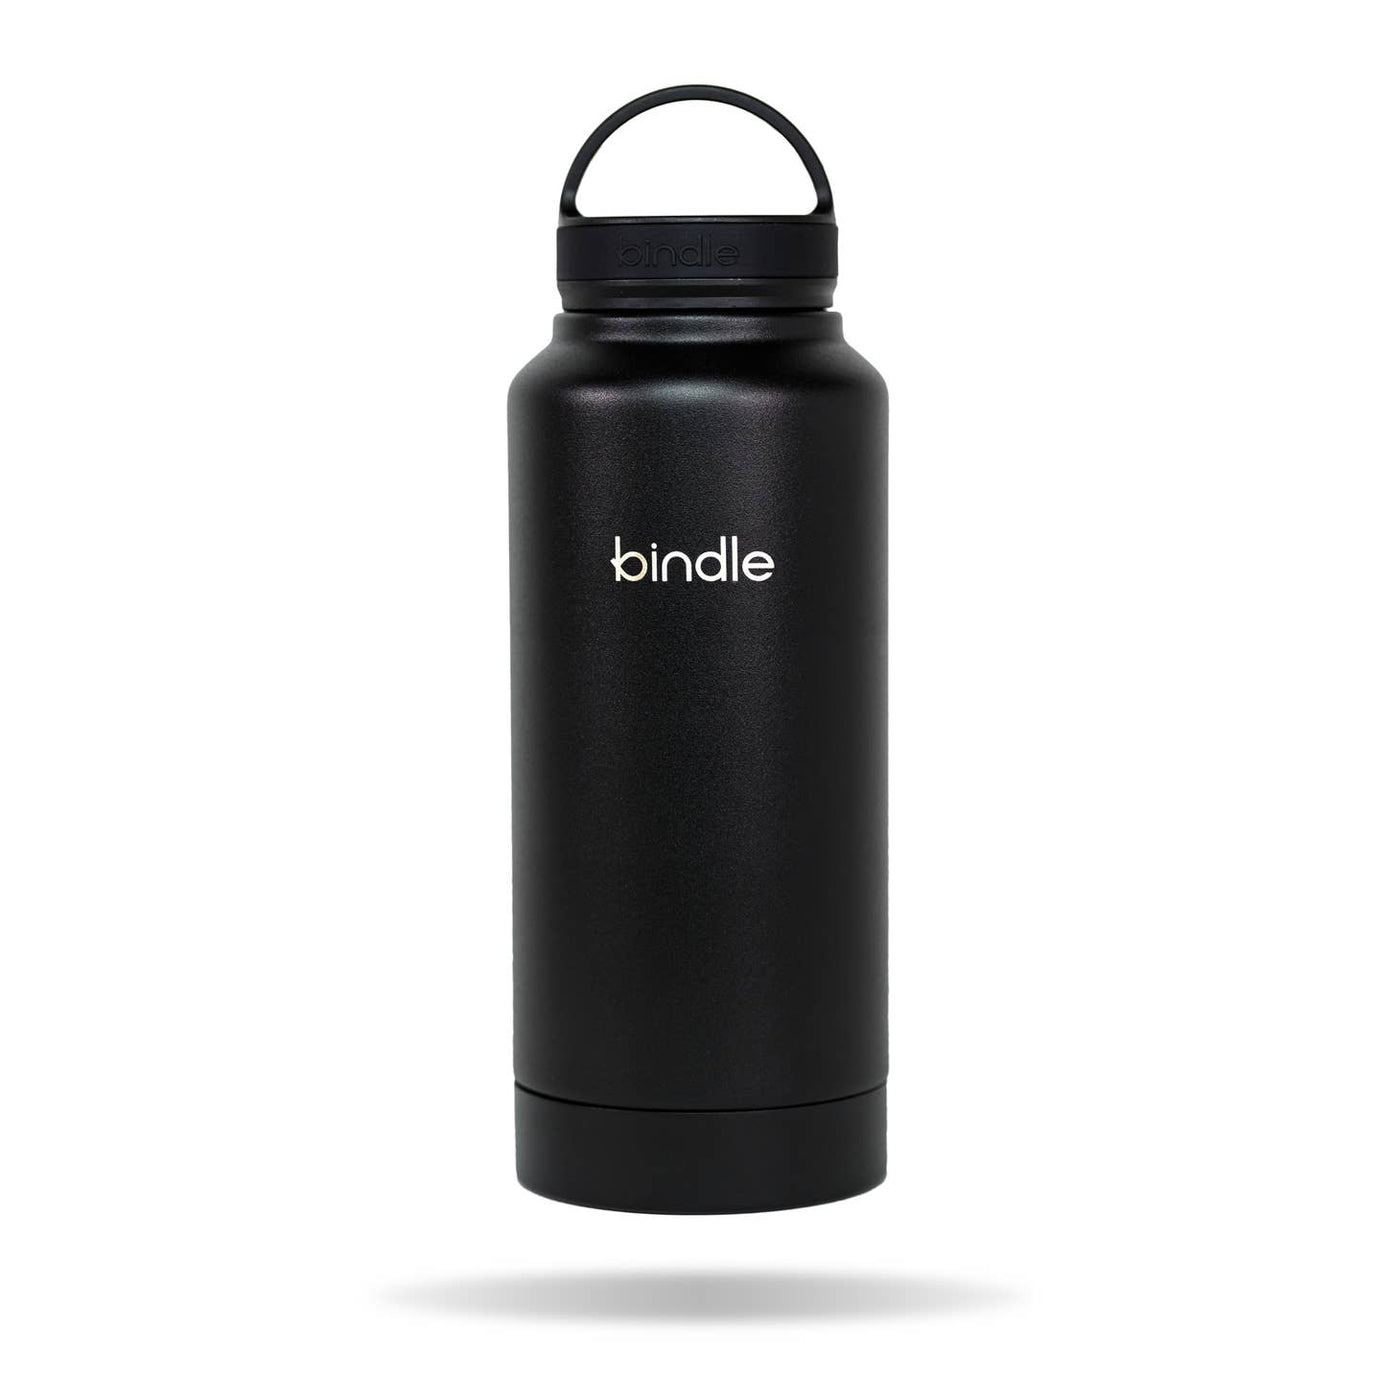 Bindle Bottle - 24 oz